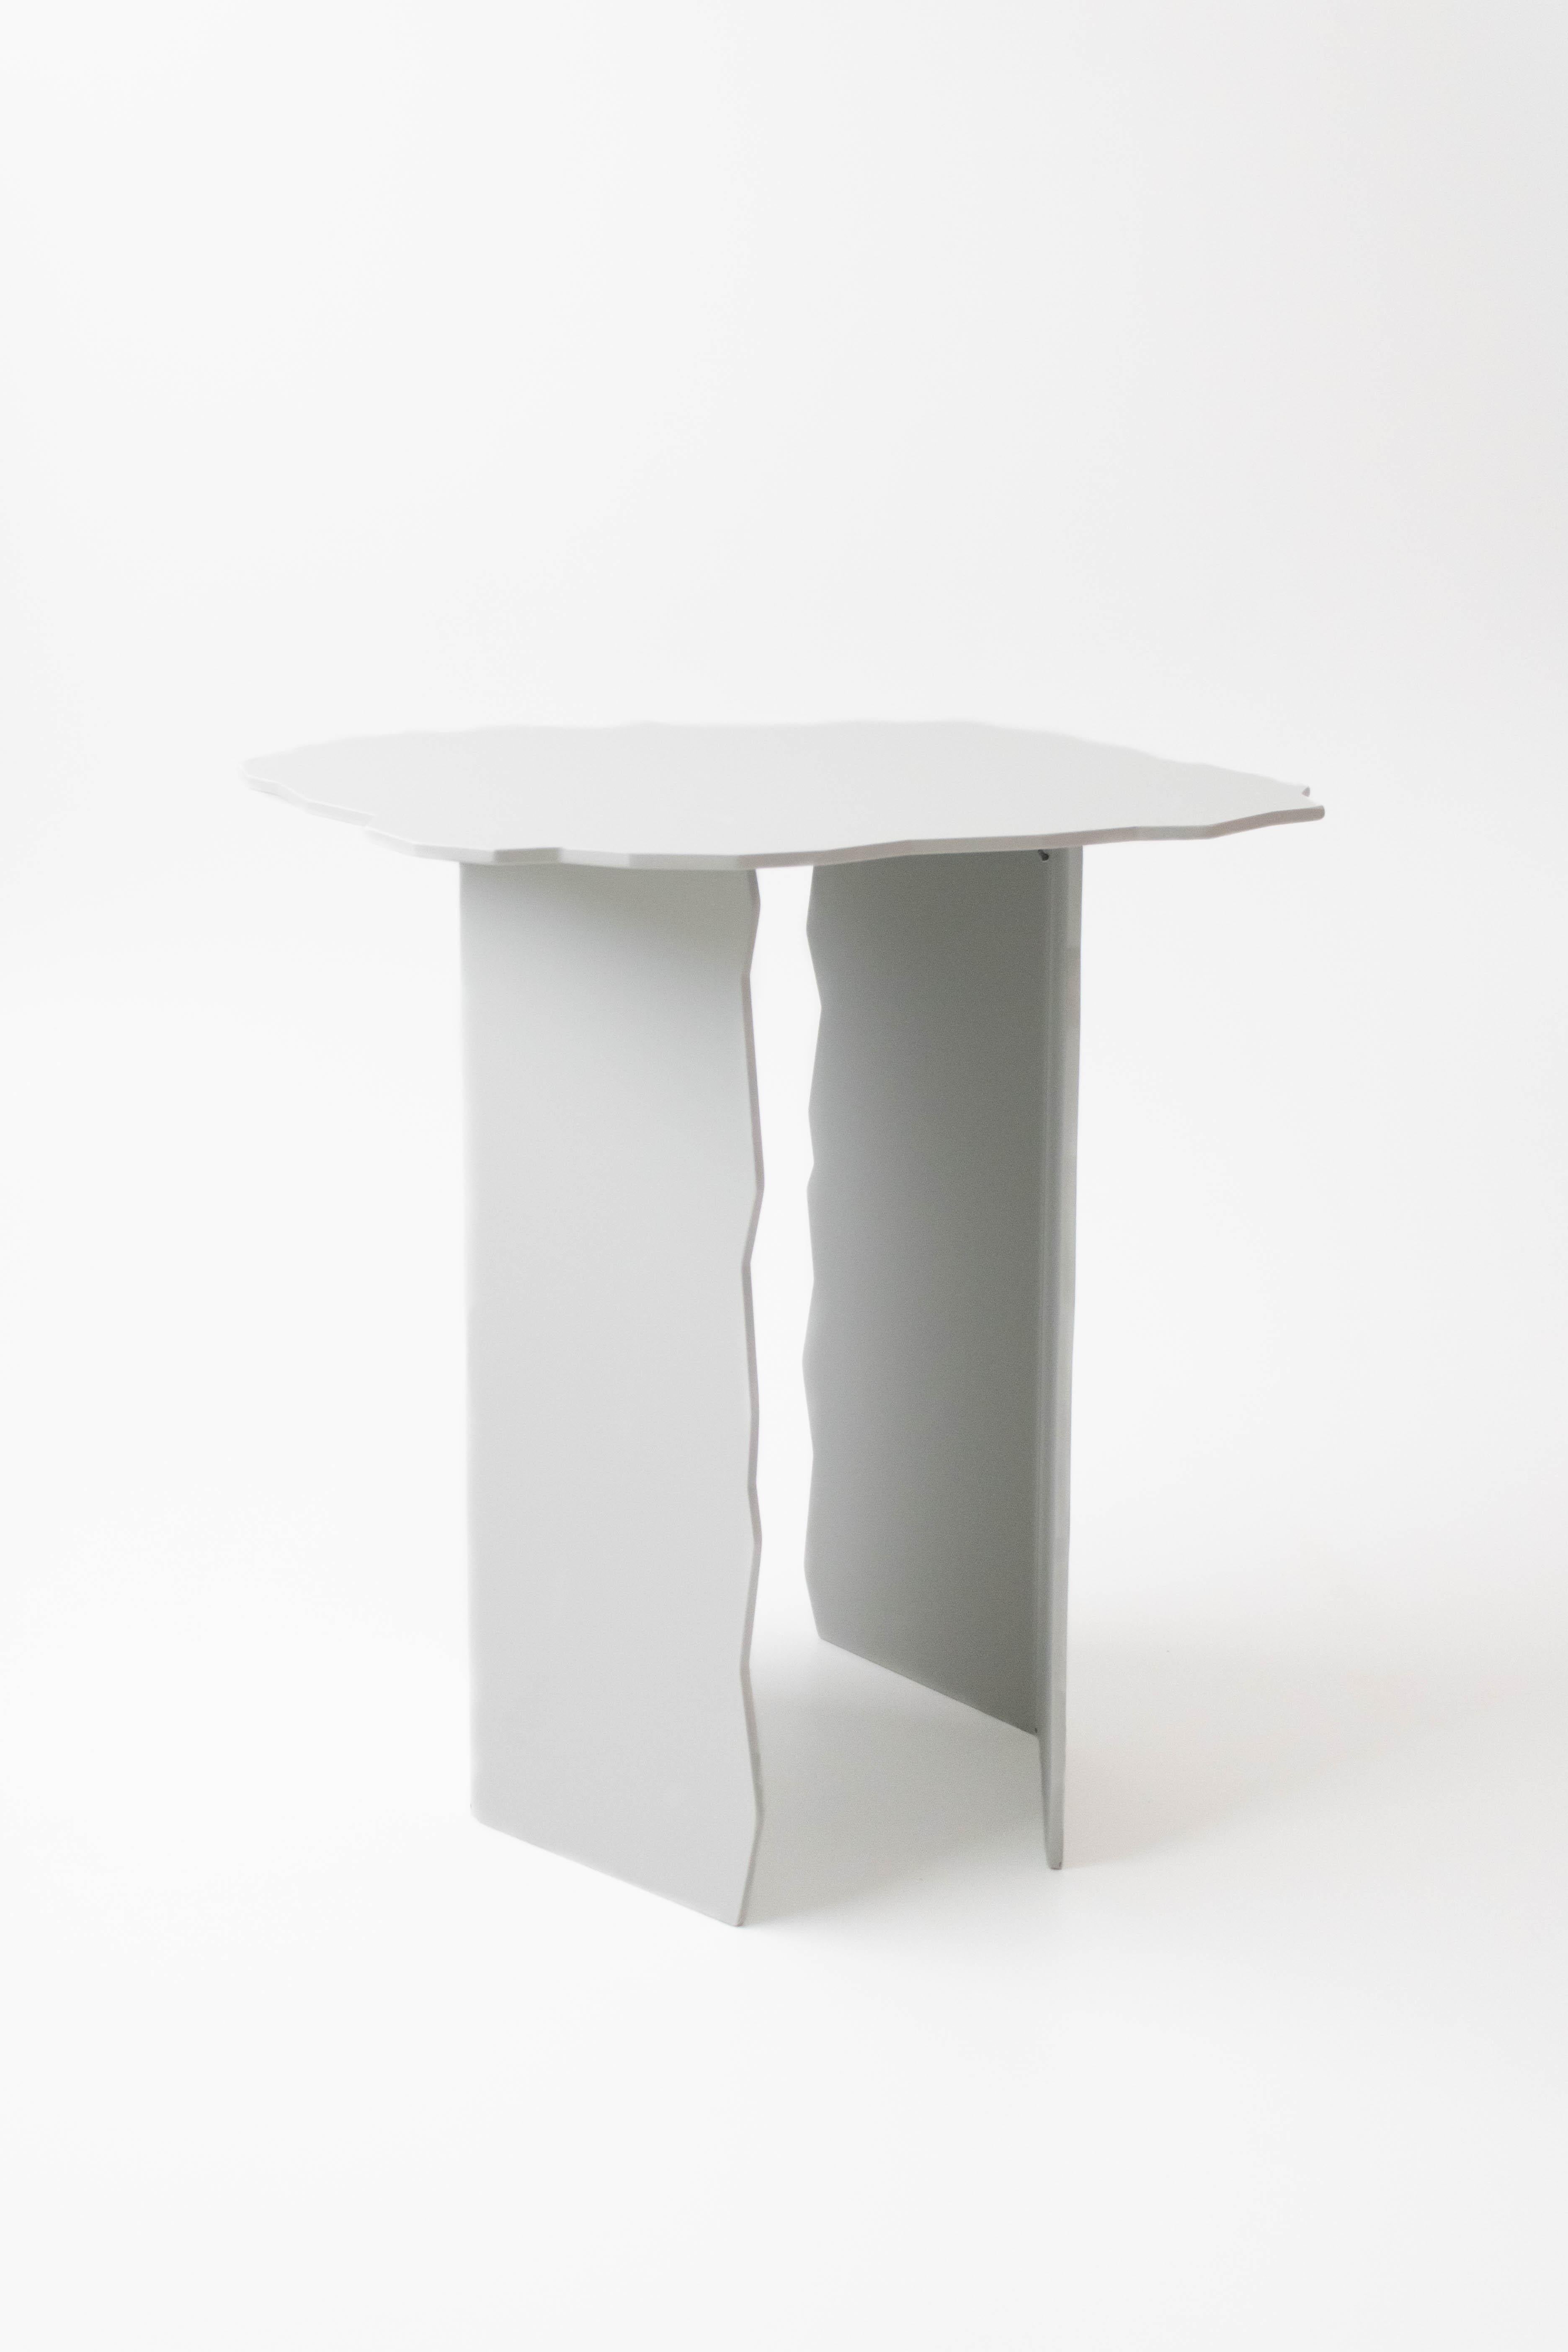 Disrupt Großer Tisch von Arne Desmet
Abmessungen: T44 x B44 x H46 cm
MATERIALIEN: Pulverbeschichtetes Aluminium.
Andere Farben sind auf Anfrage erhältlich.

Die Formen der Disrupt-Tische sind inspiriert von den gezackten Kanten, die durch Erdrisse